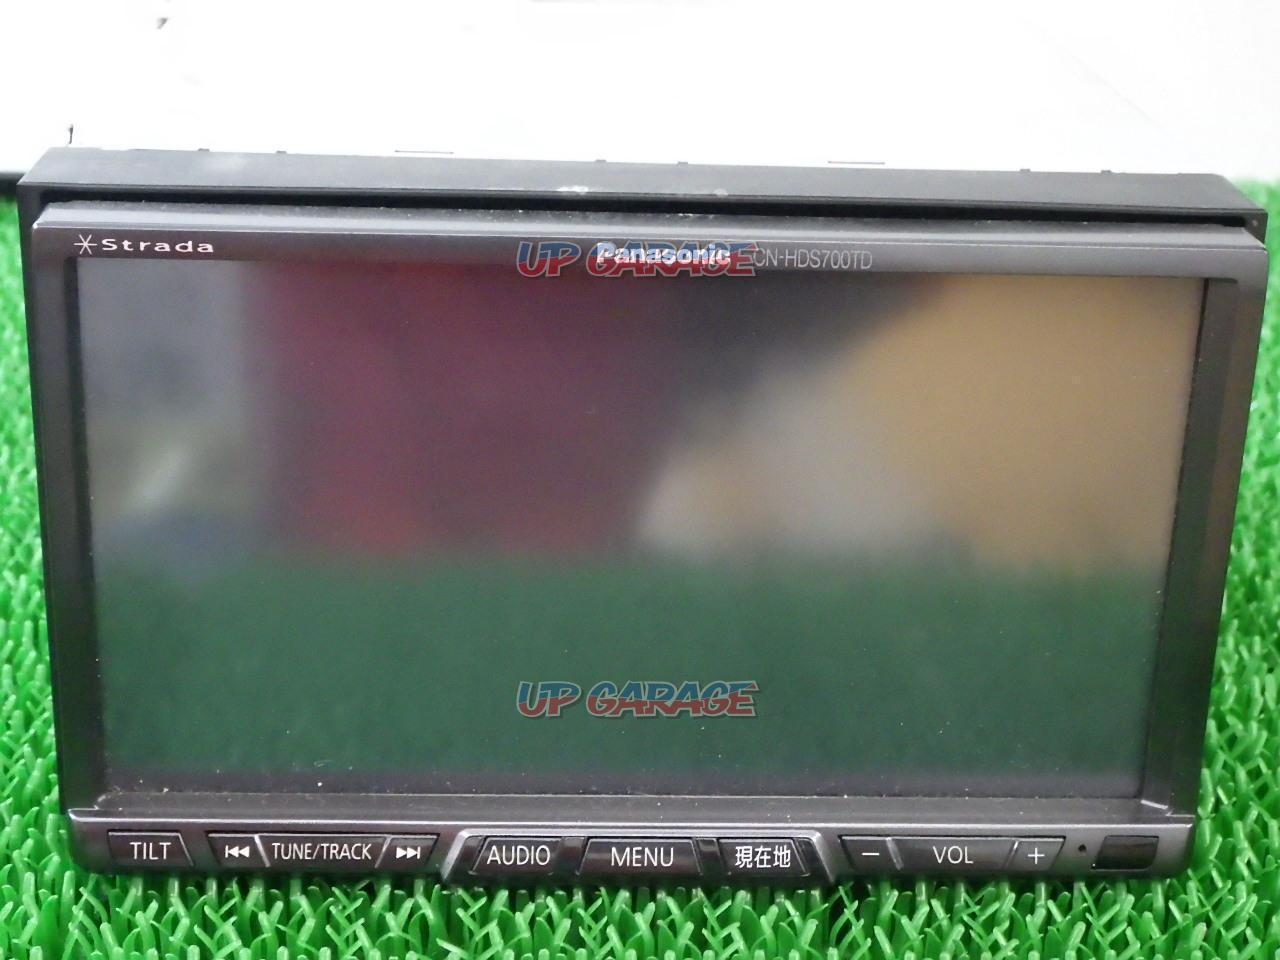 送料込みパナソニックストラーダCN-HDS700TD HDDナビフルセグ中古品